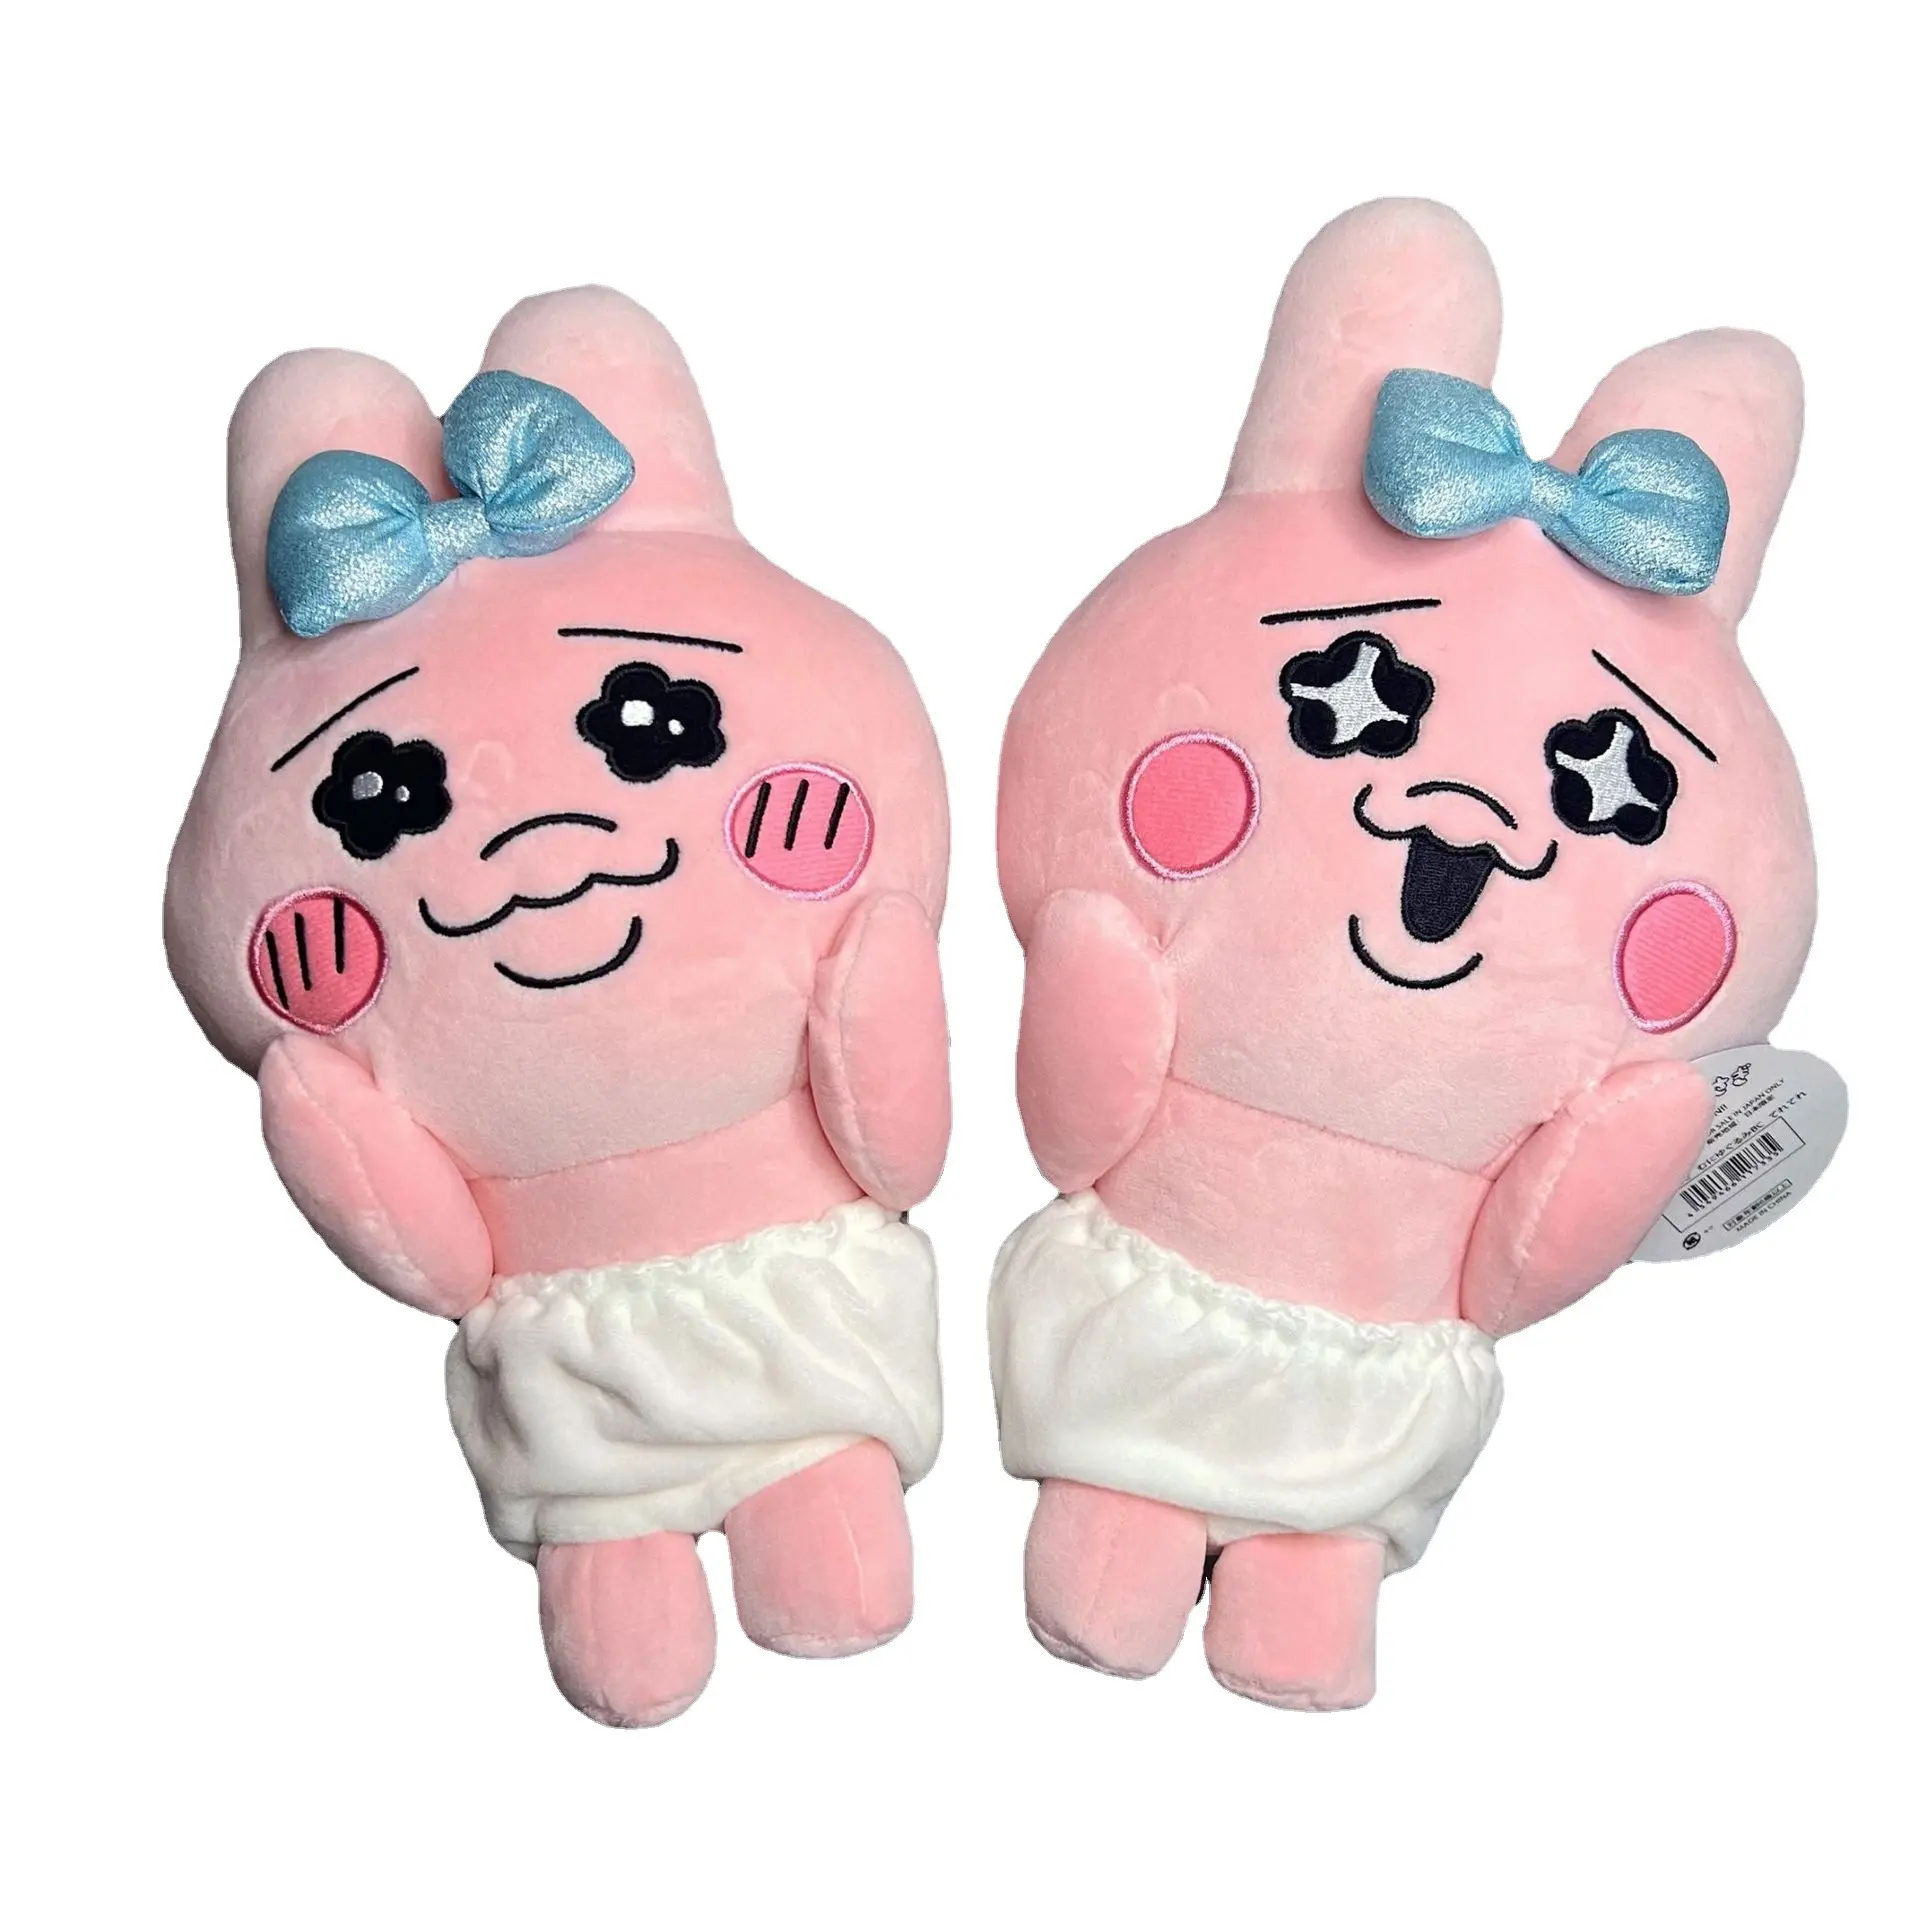 JM Japanische süße Plüsch puppe 25cm Pink Bunny Plüschtiere Nettes Kaninchen Kuscheltiere Plüsch Babys pielzeug für Kinder Geschenk